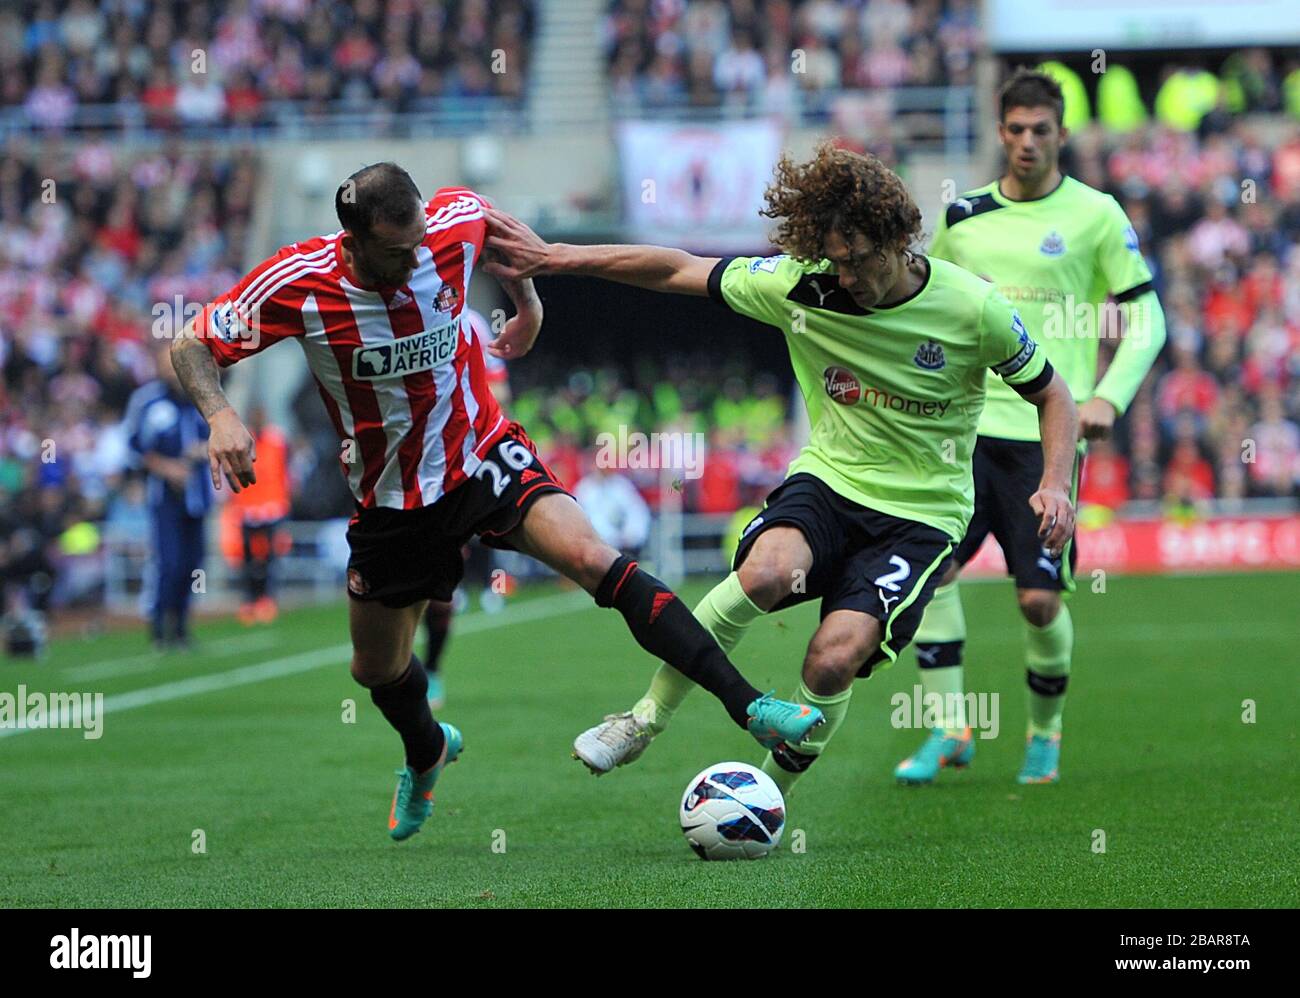 Sunderland's Steven Fletcher (left) and Newcastle United's Fabricio Coloccini (right) battle for the ball Stock Photo